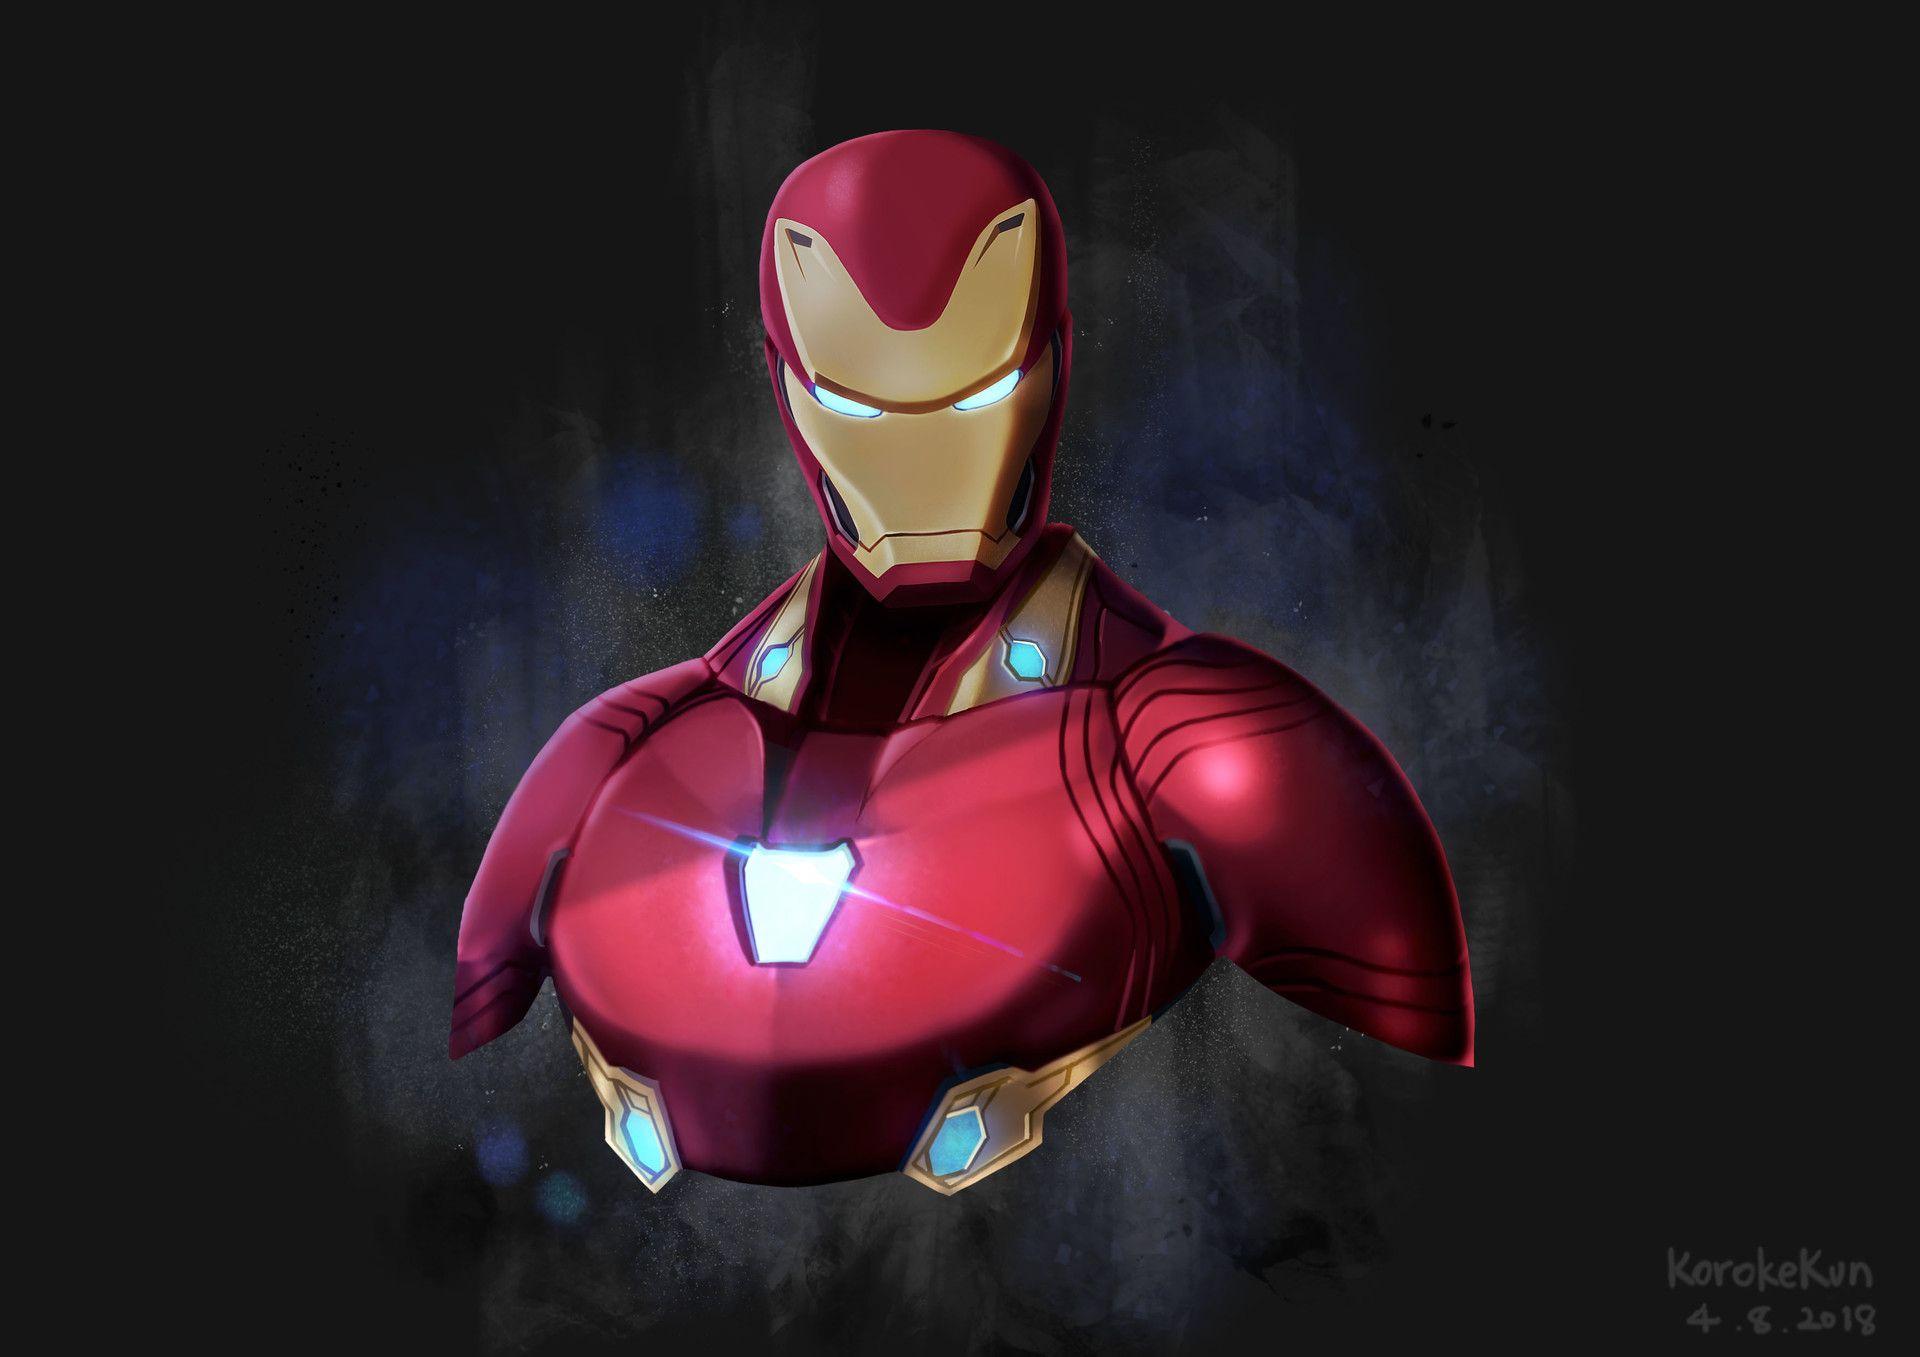 Iron Man Avengers Infinity War Artwork 1366x768 Resolution